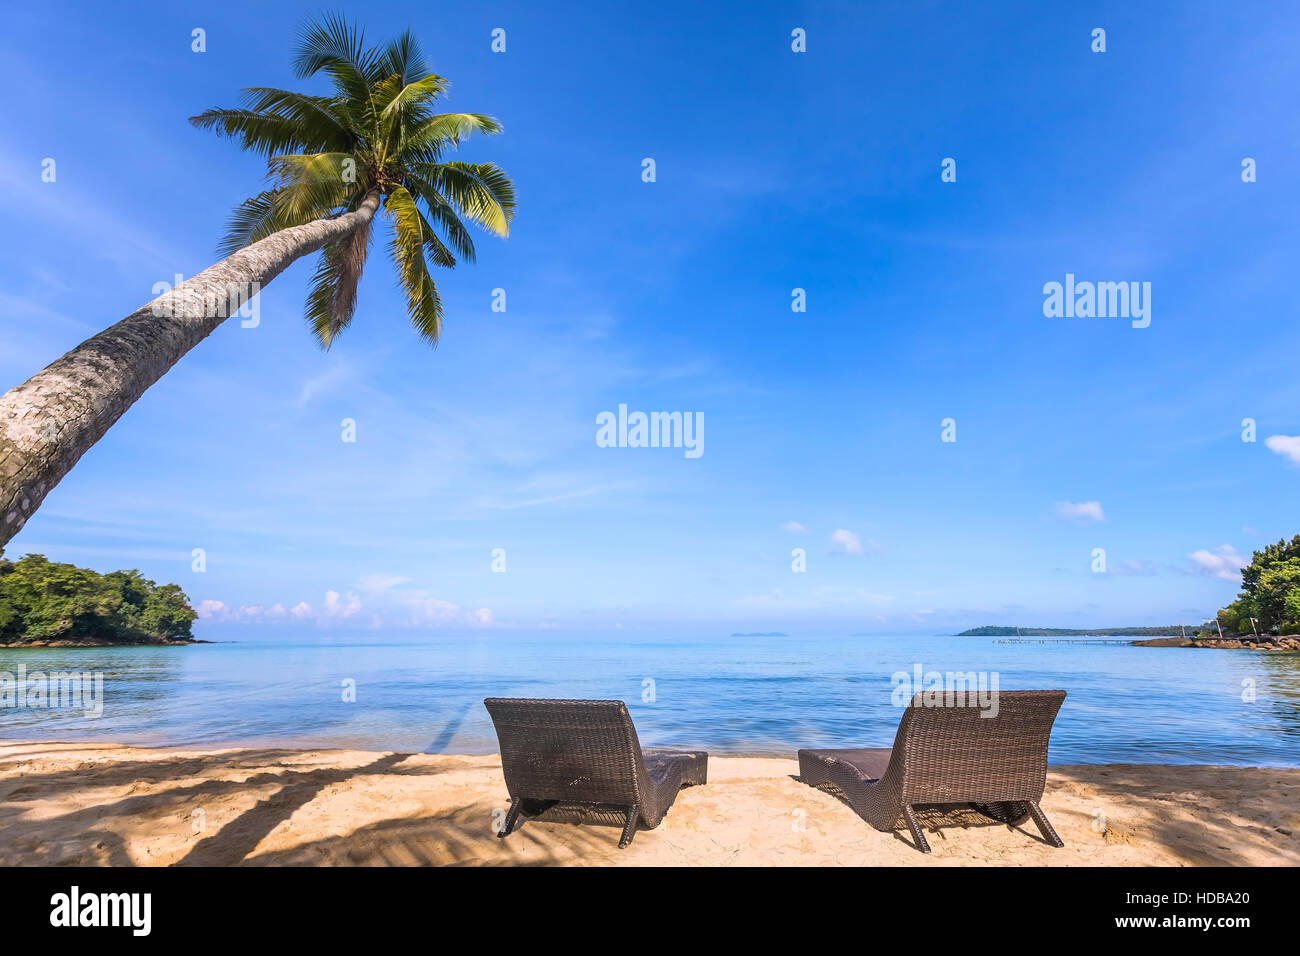 Paradies tropischen Strand mit einer schönen Palme und zwei liegen auf dem Sand, einen erholsamen Urlaub Stockfoto